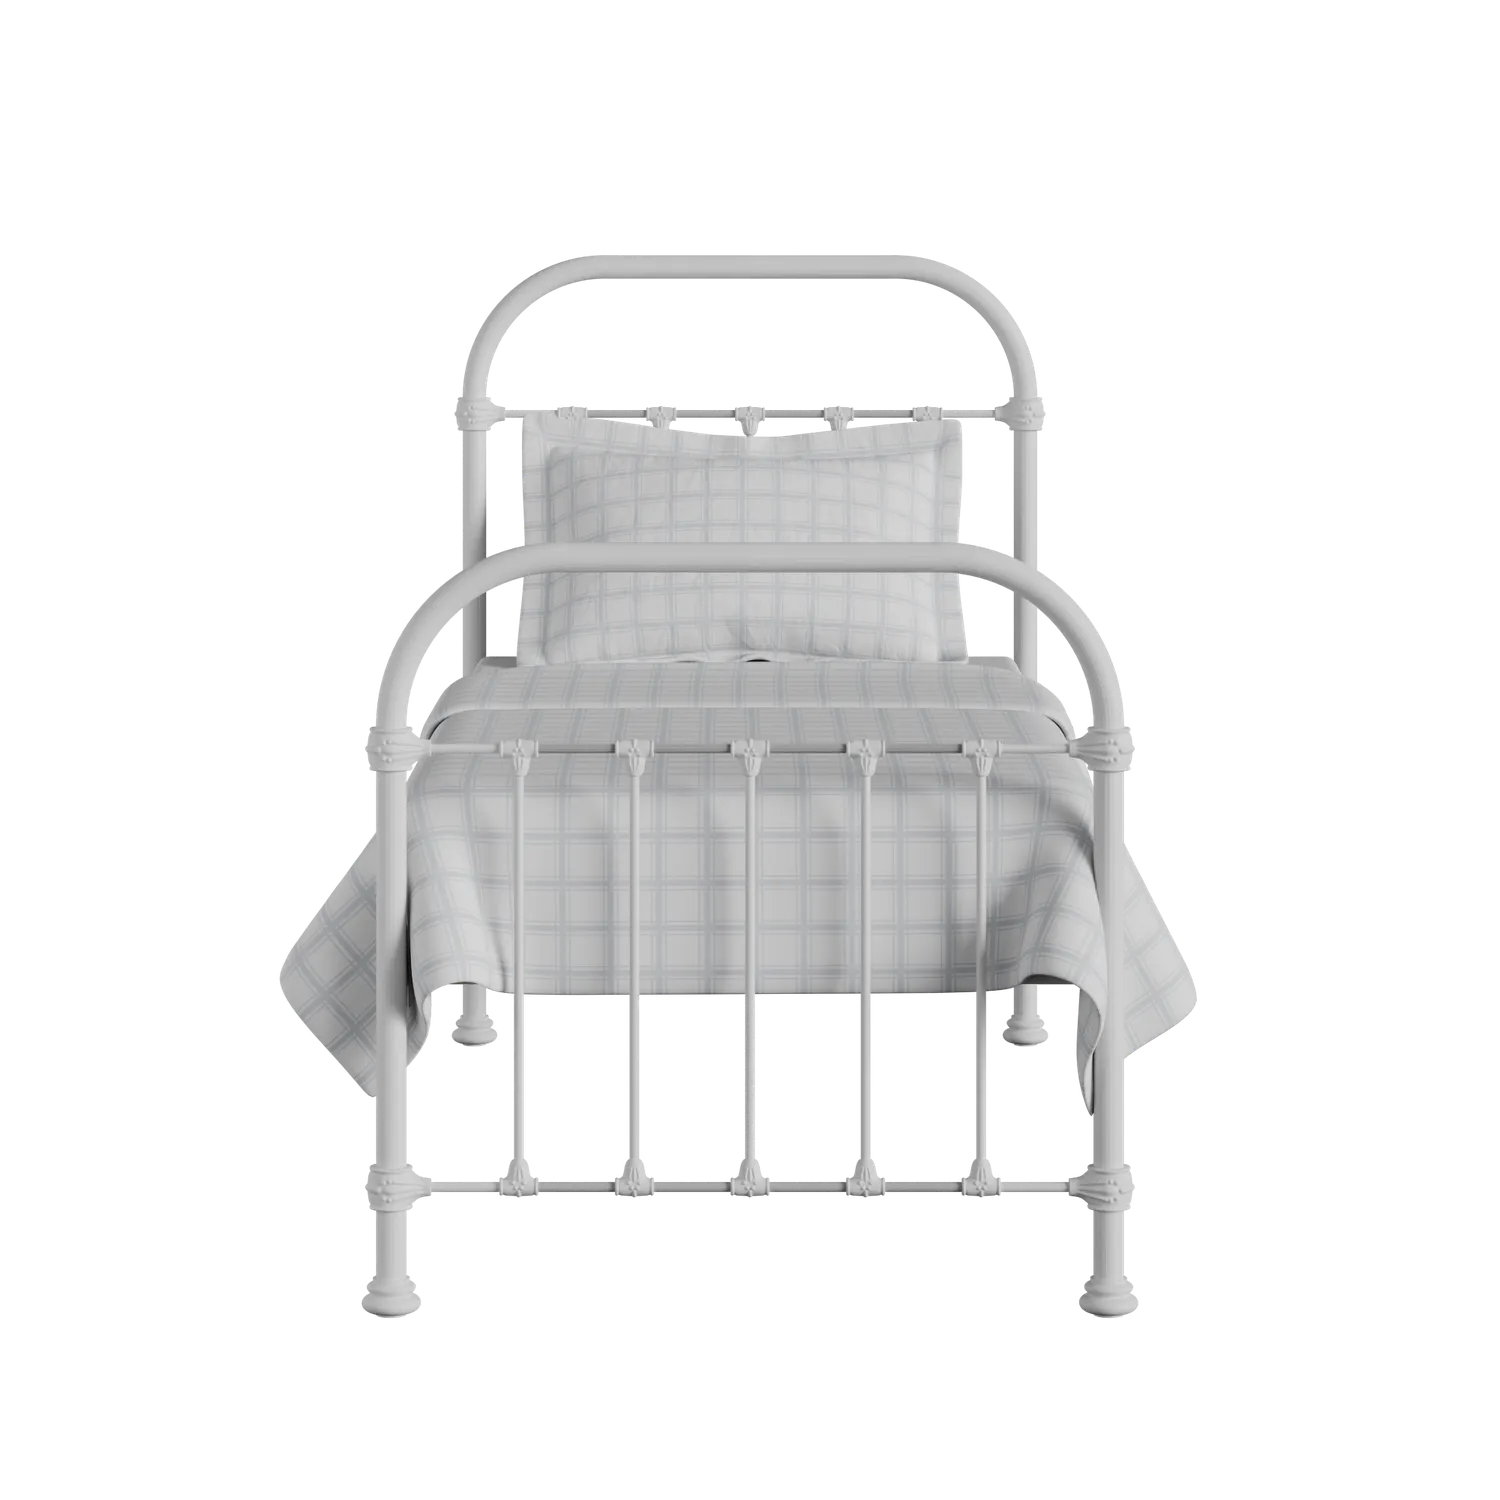 Timolin iron/metal single bed in white